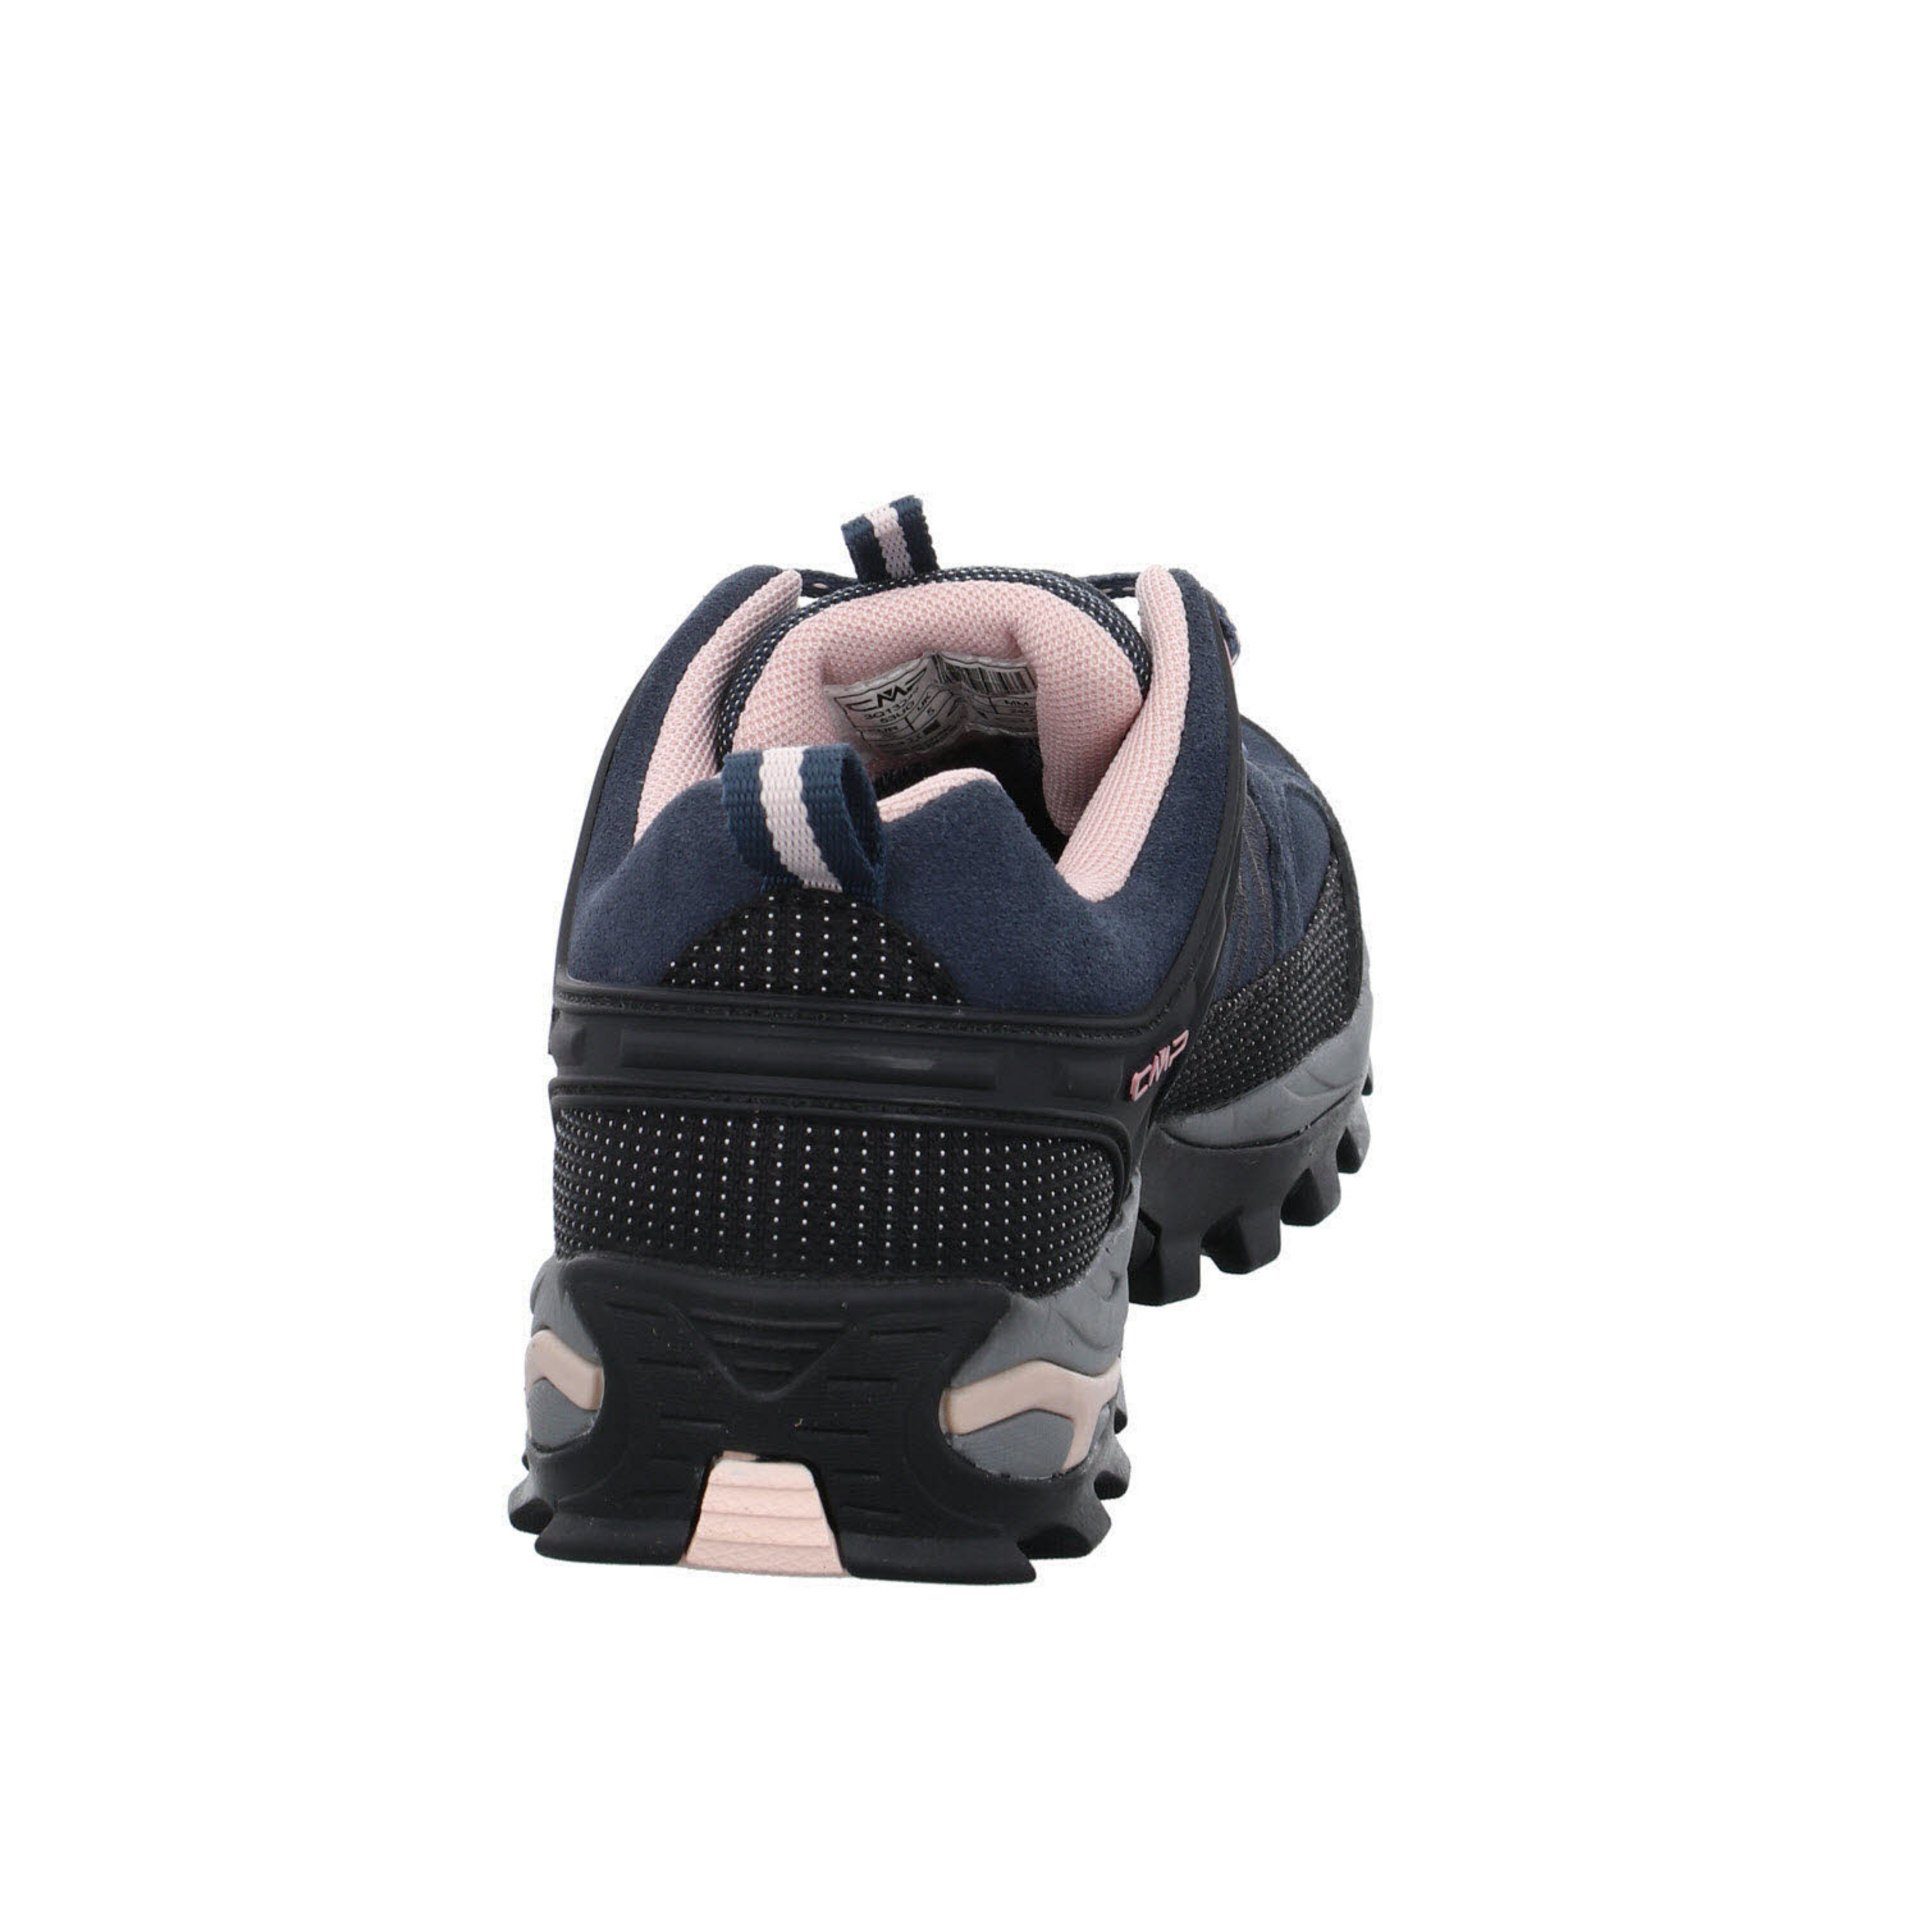 CMP Damen Schuhe Outdoor Riegel 53UG Outdoorschuh Low Outdoorschuh ASPHALT-ANTRACITE-ROSE Leder-/Textilkombination